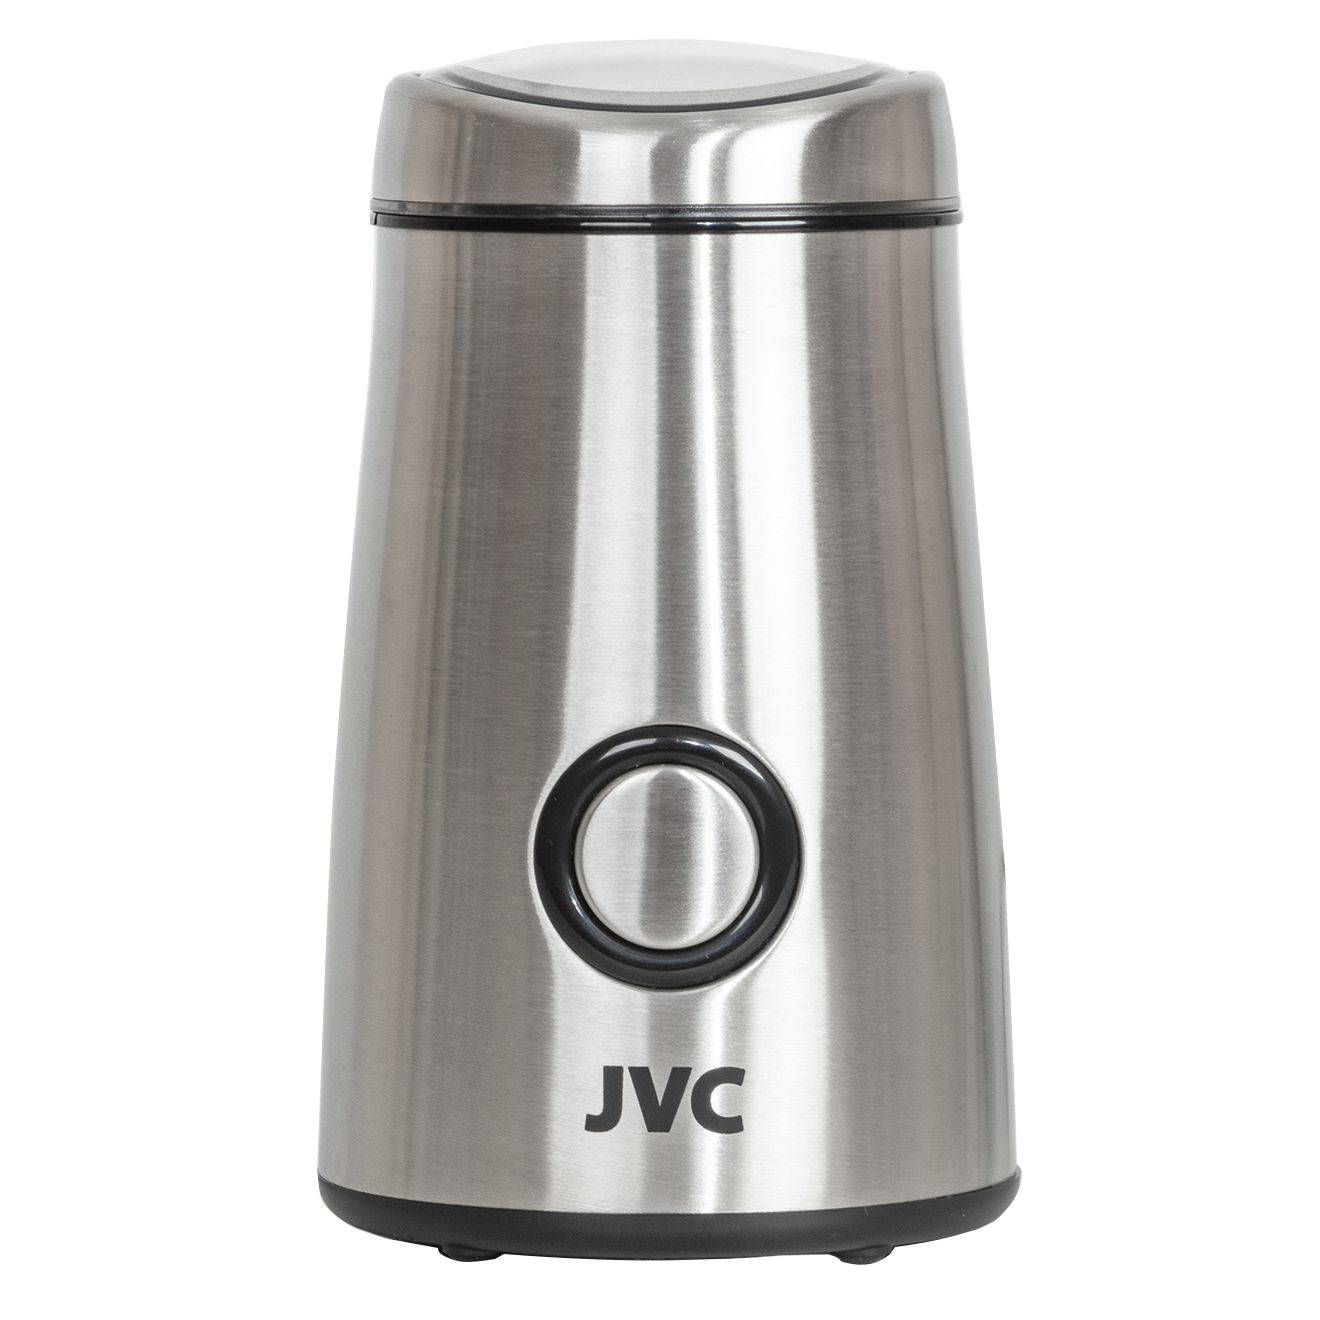 Кофемолка JVC опт JK-CG017 серебристый кофемолка graef cm 900 silber серебристый